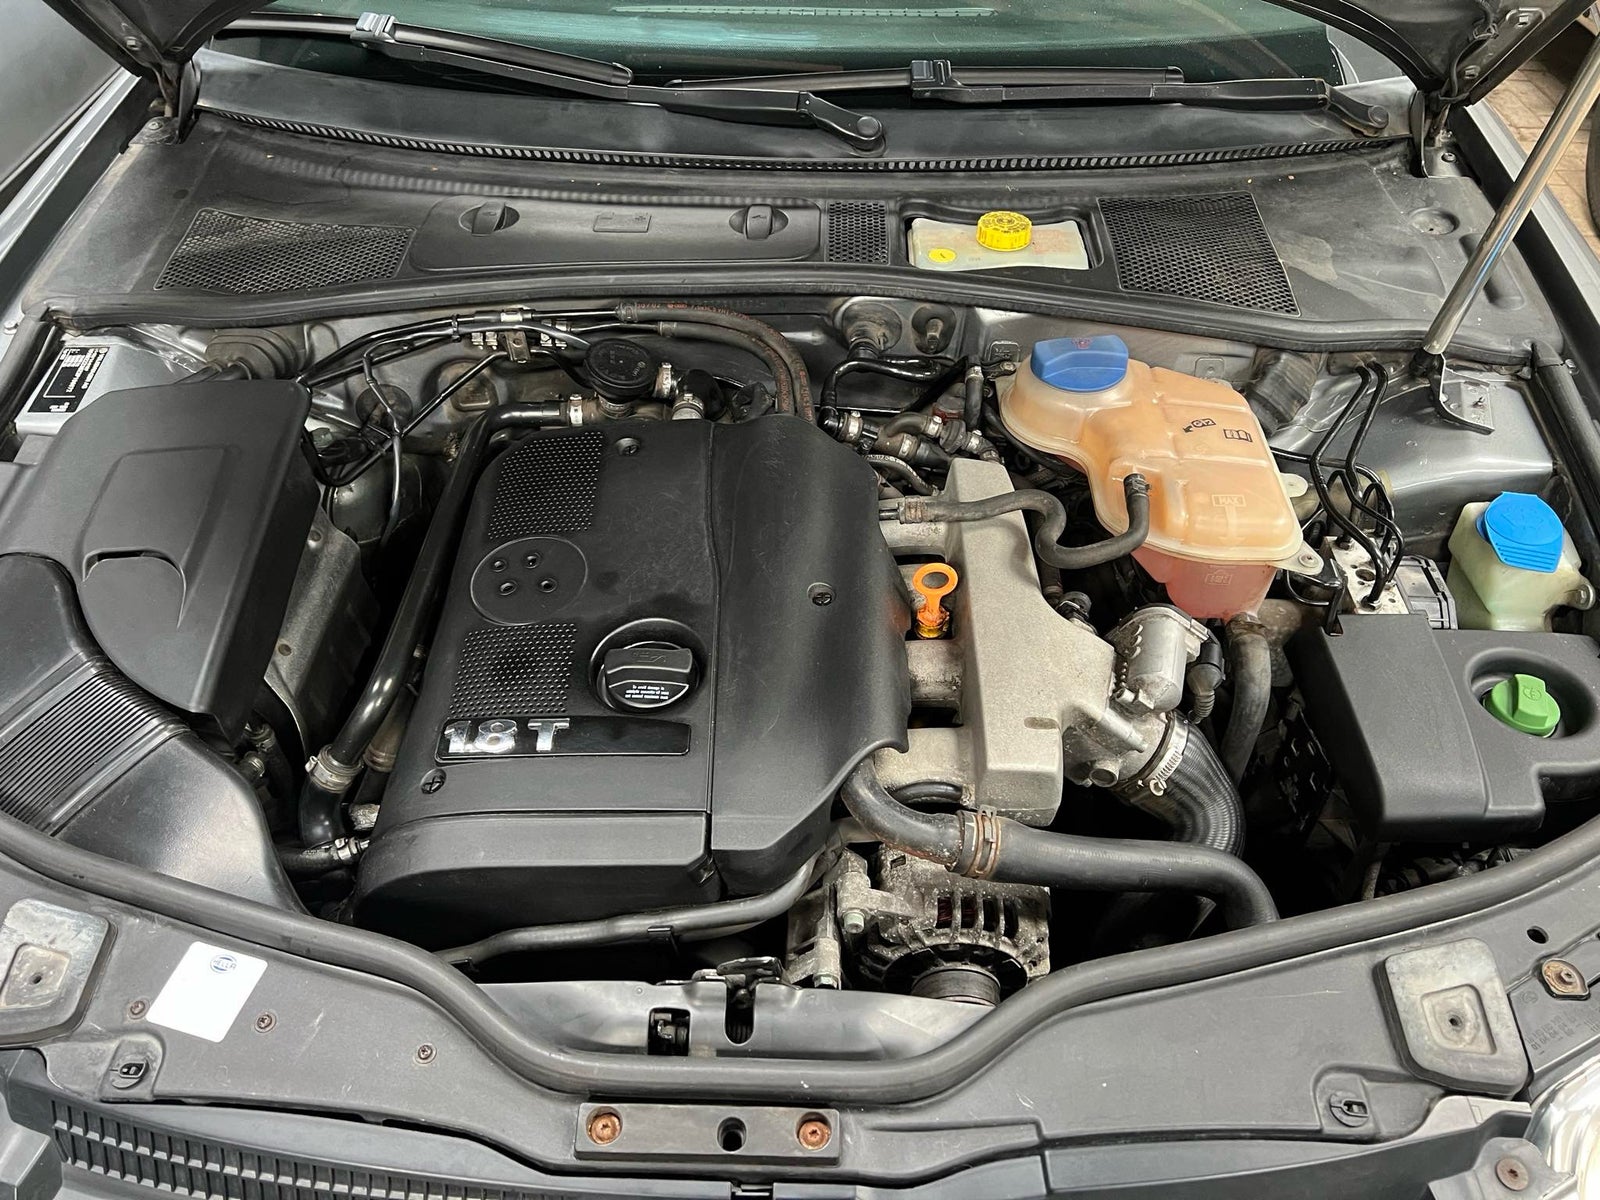 VW Passat, 1,8 T 150 DK, Benzin